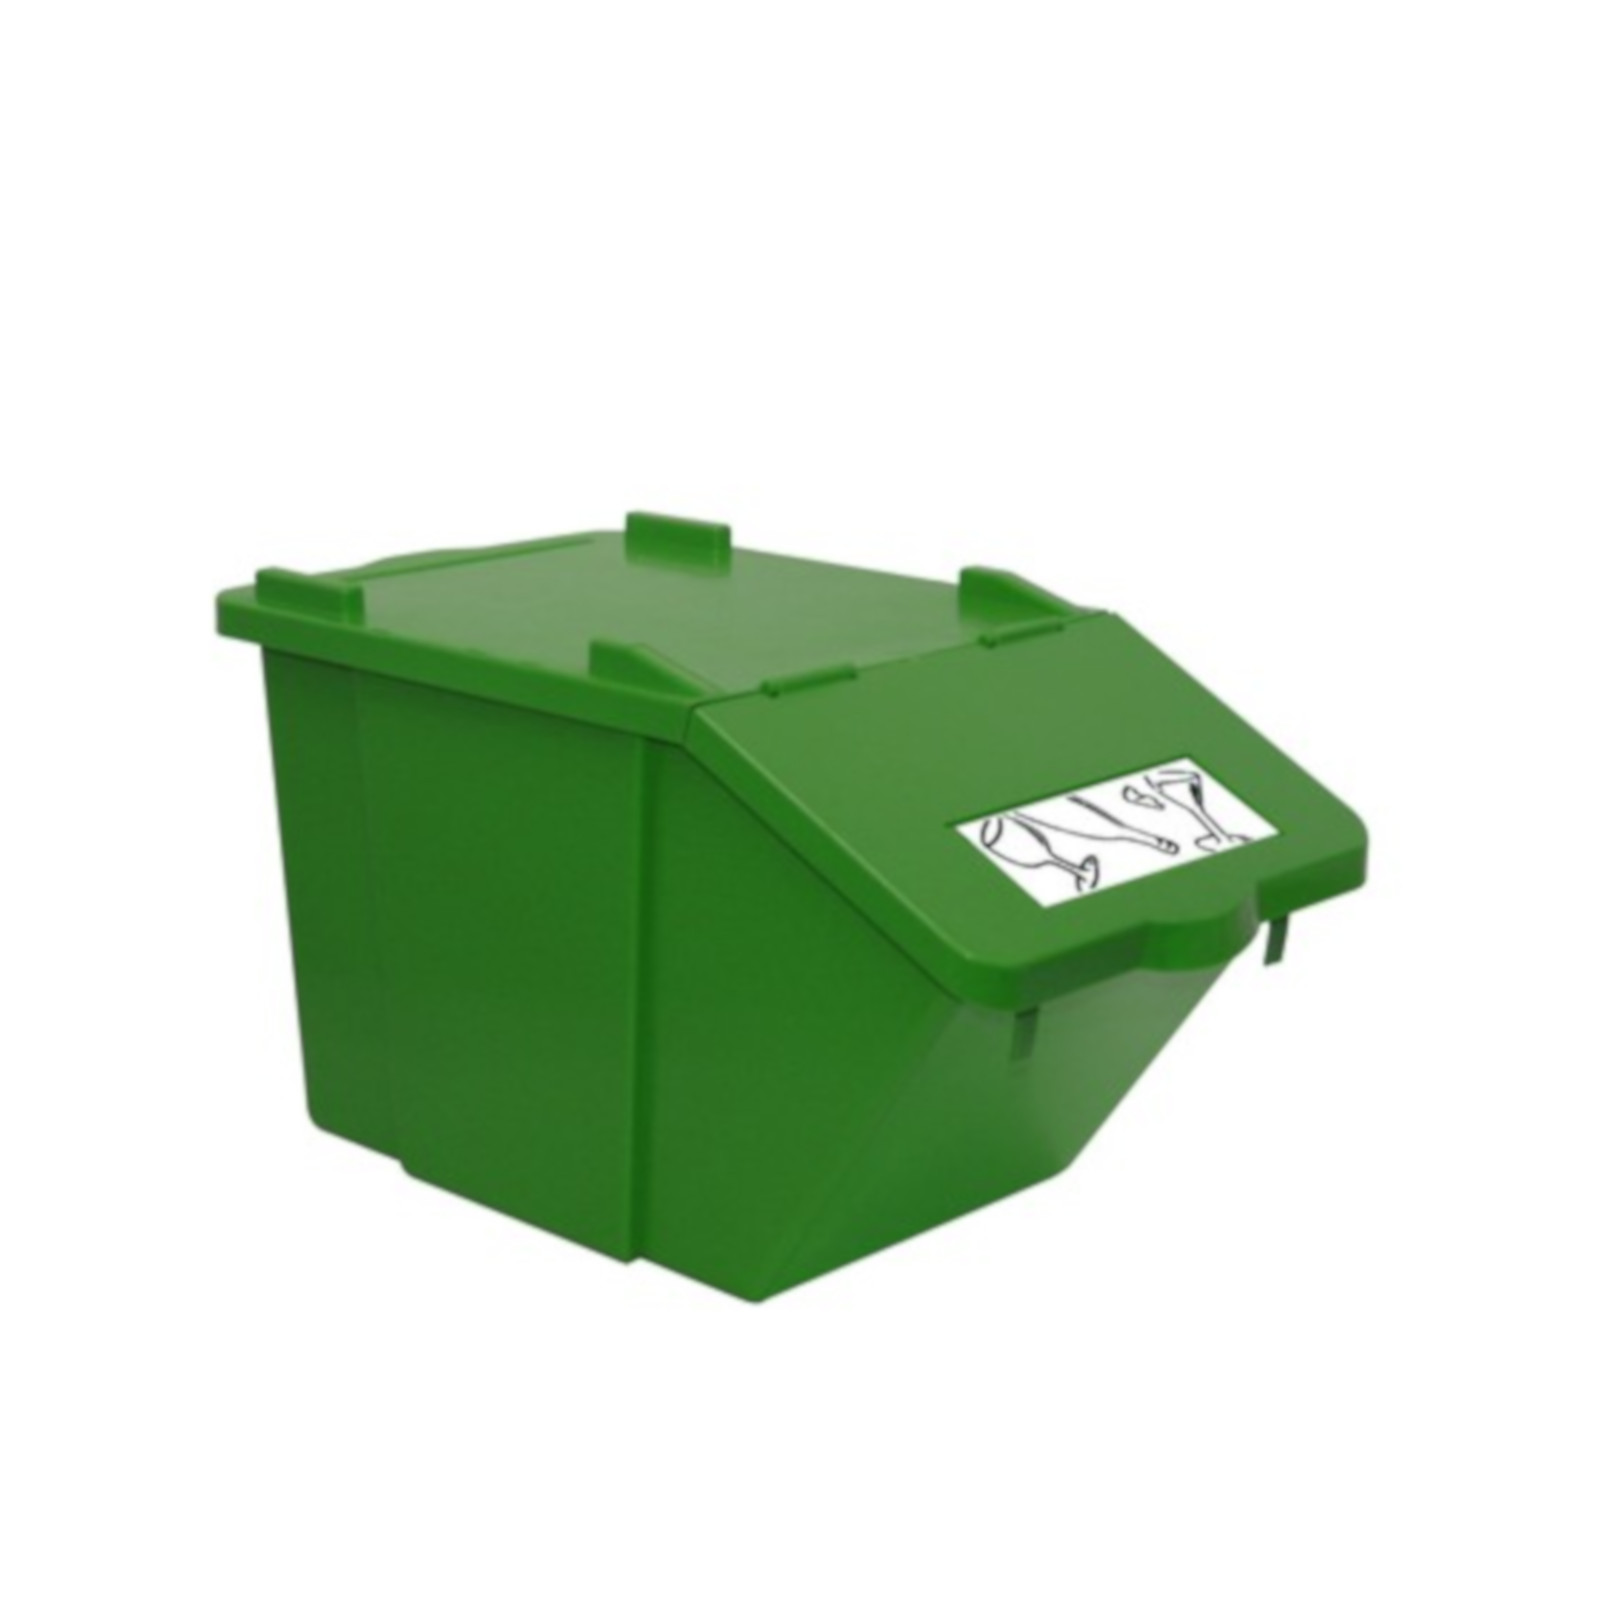 Pojemnik do sortowania odpadów piętrowy - zielony 45L - sklep.odpady.org